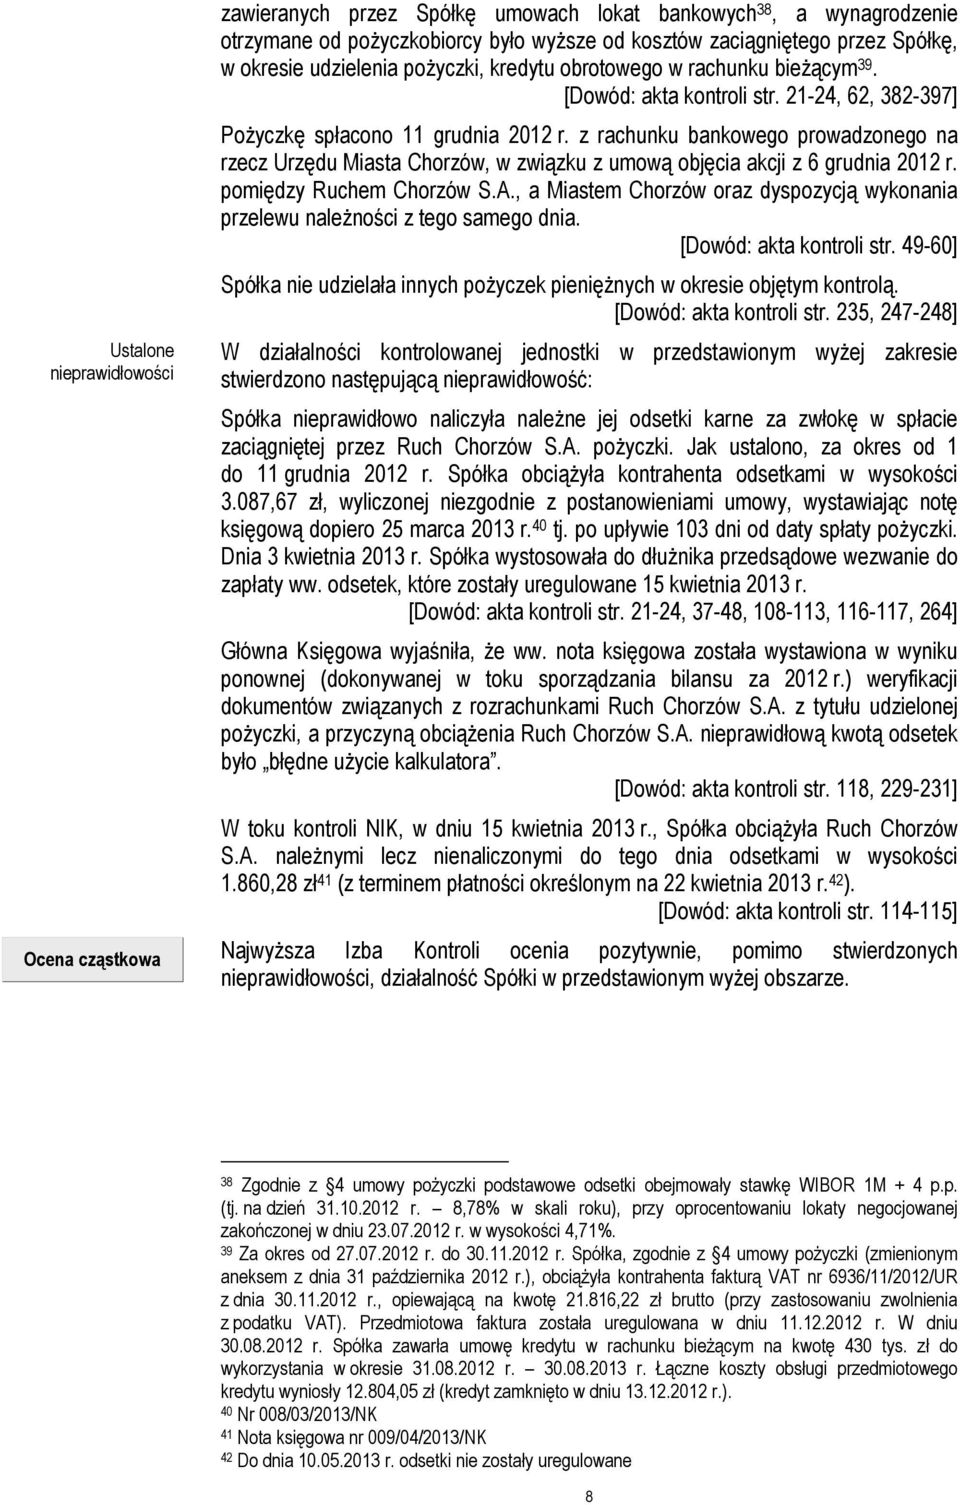 z rachunku bankowego prowadzonego na rzecz Urzędu Miasta Chorzów, w związku z umową objęcia akcji z 6 grudnia 2012 r. pomiędzy Ruchem Chorzów S.A.